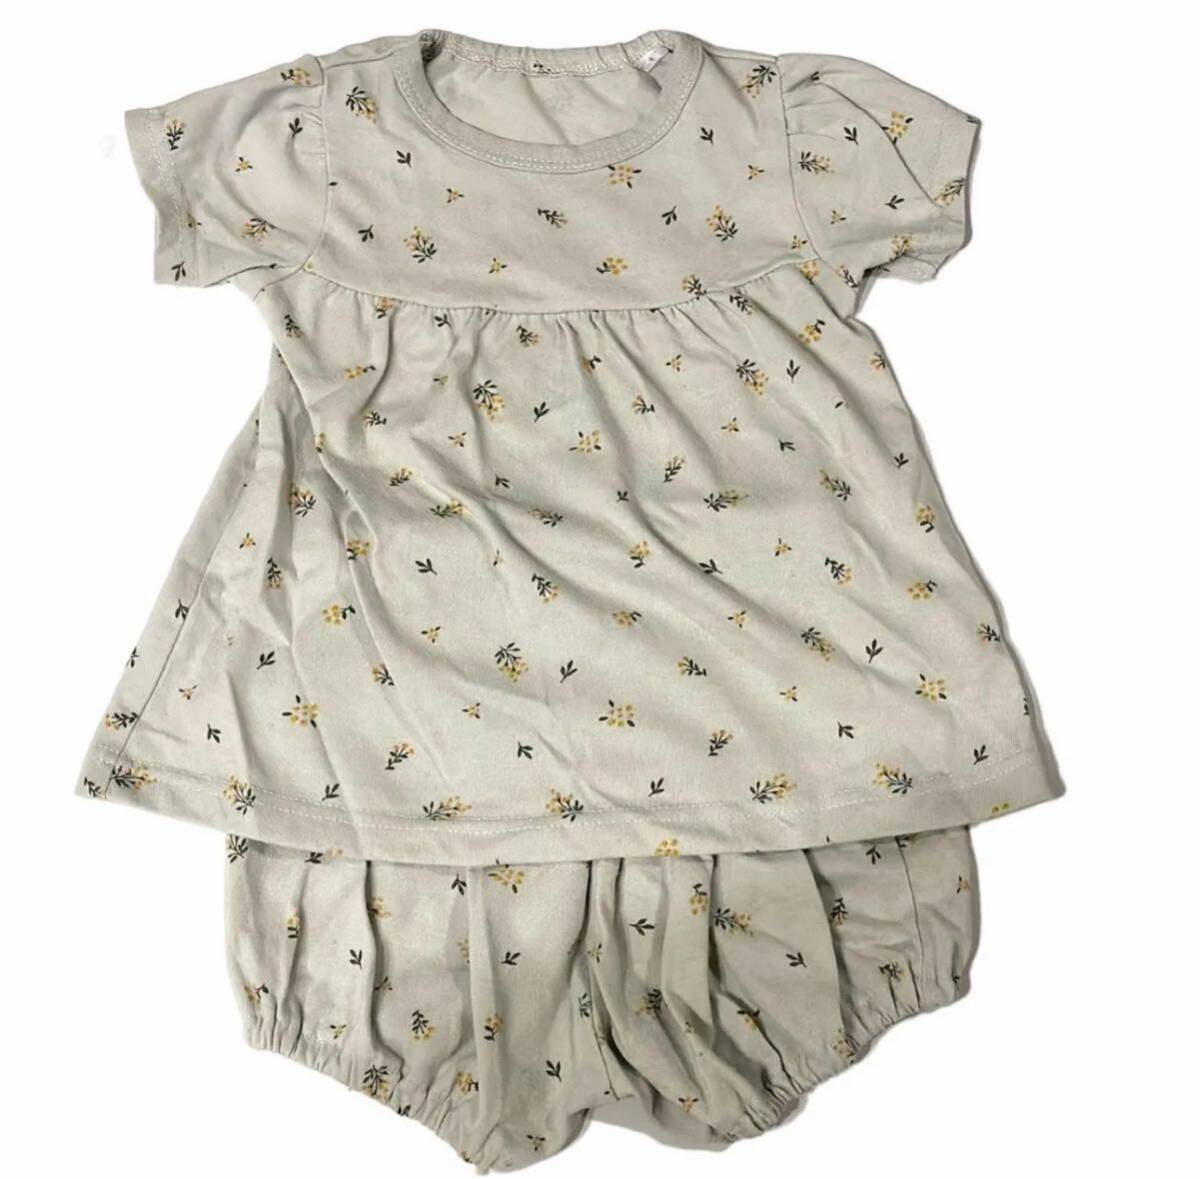  детская одежда короткий рукав выставить 80 размер цветочный принт Kids tops короткий рукав футболка девочка cut and sewn зеленый младенец брюки 